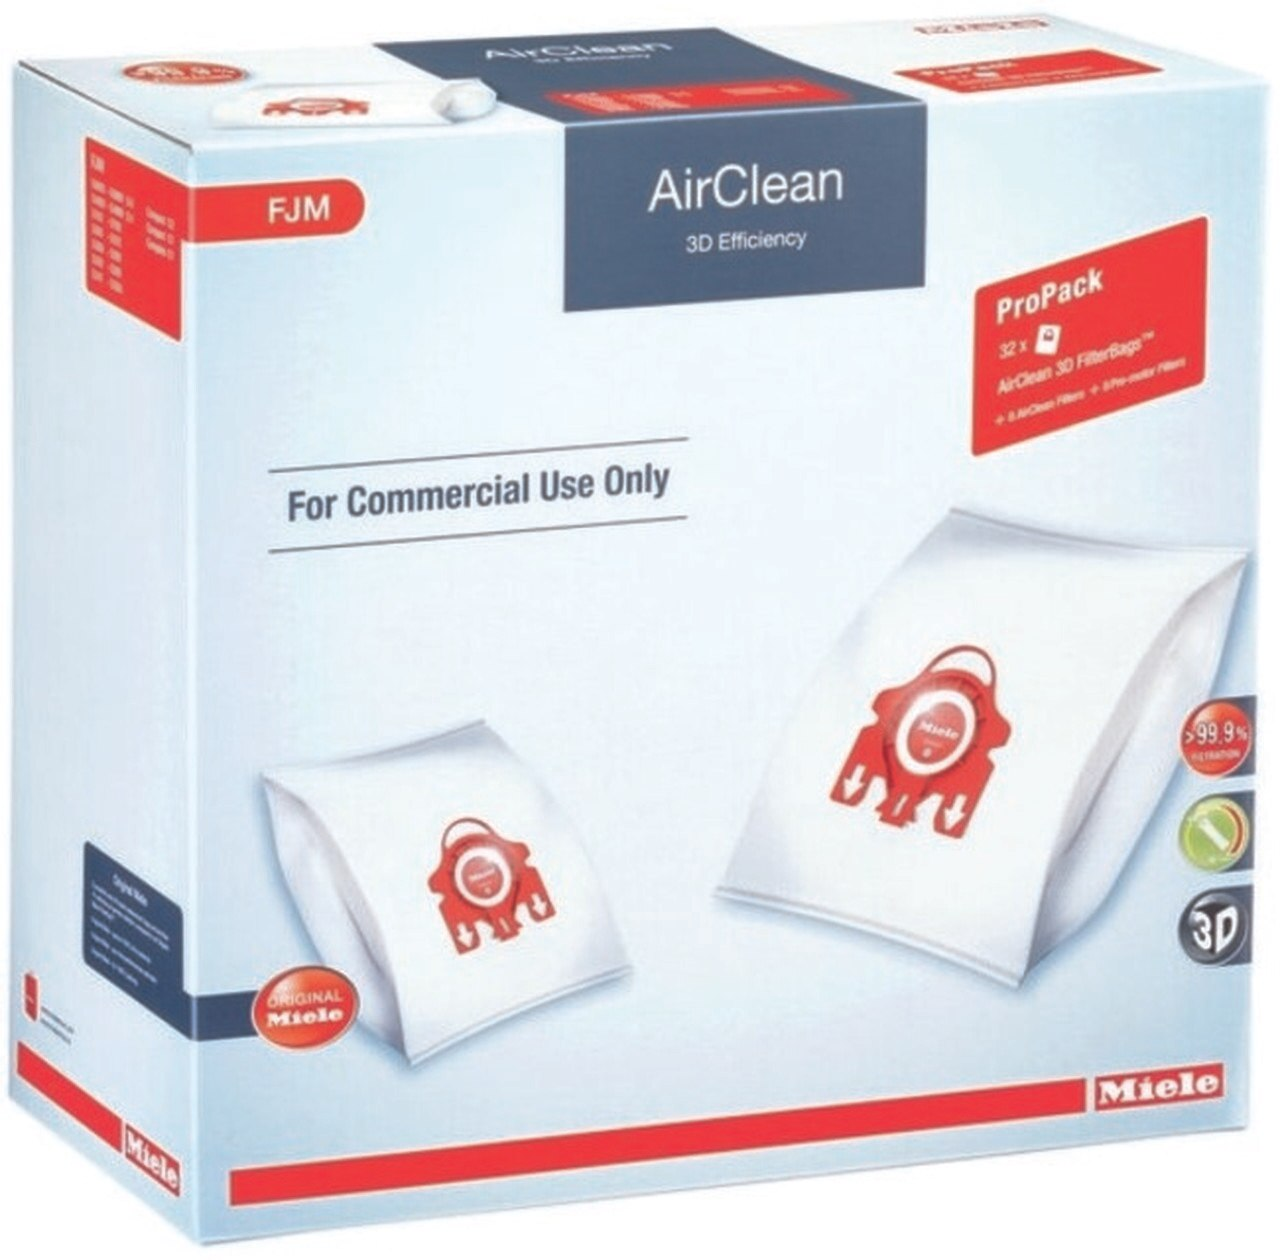 Miele Vacuum Cleaner FJM HyClean 3D Efficiency x 4 Dust Bag & Filter Pack 